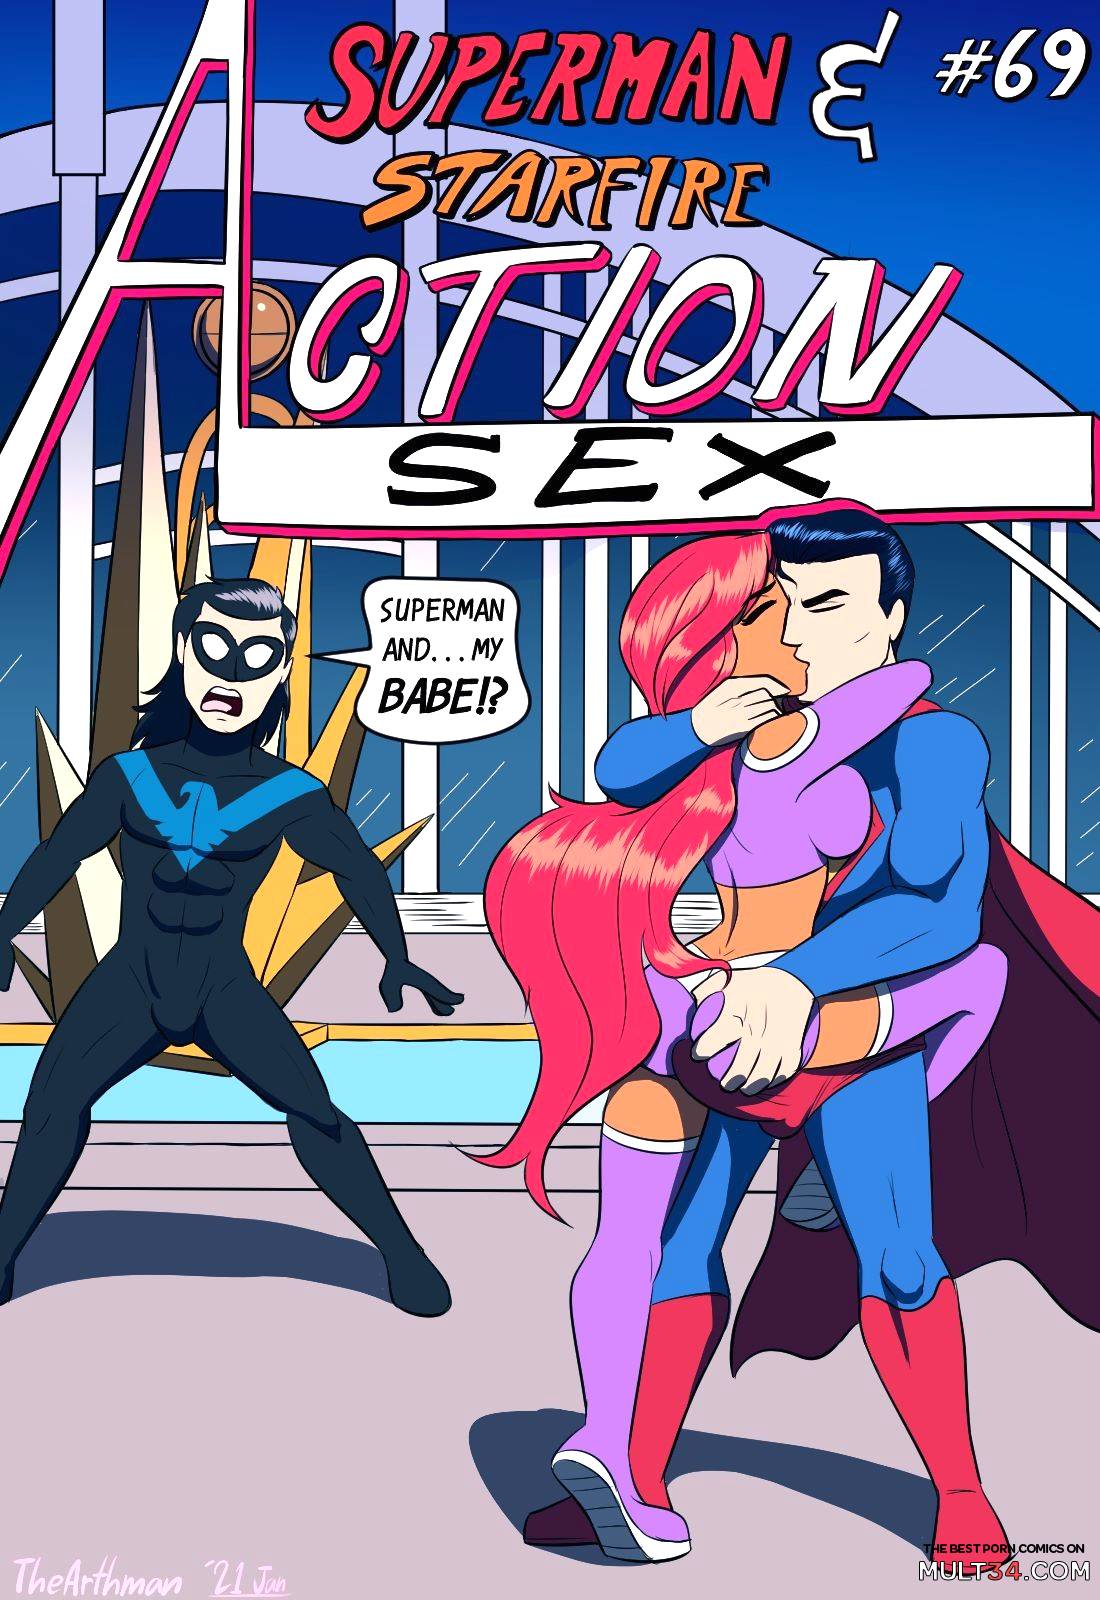 Action - Action Sex porn comic - the best cartoon porn comics, Rule 34 | MULT34